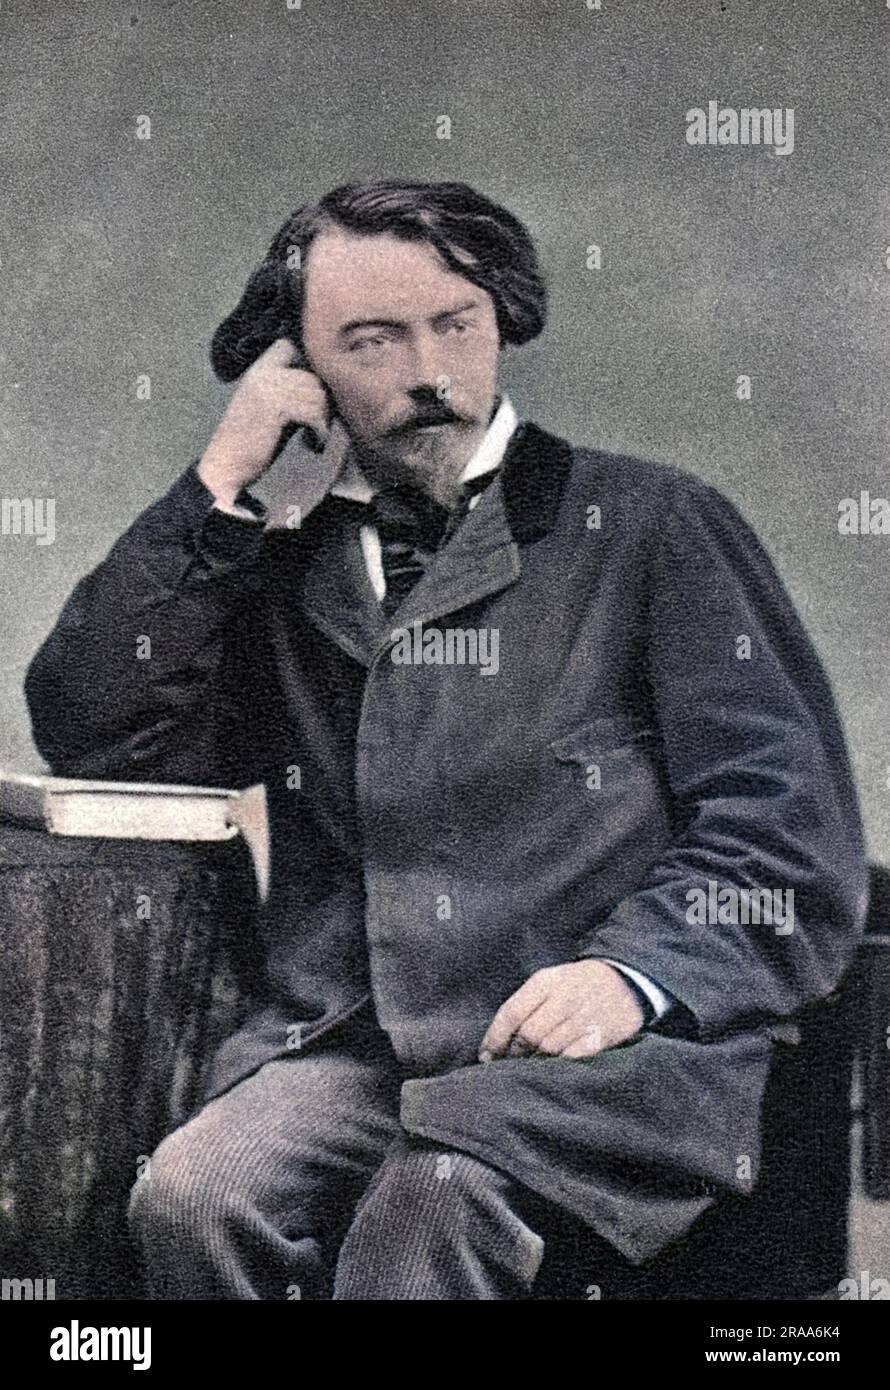 AUGUSTE, comte de VILLIERS DE l'ISLE ADAM écrivain français, photographié en 1882. Date: 1838-1889 Banque D'Images